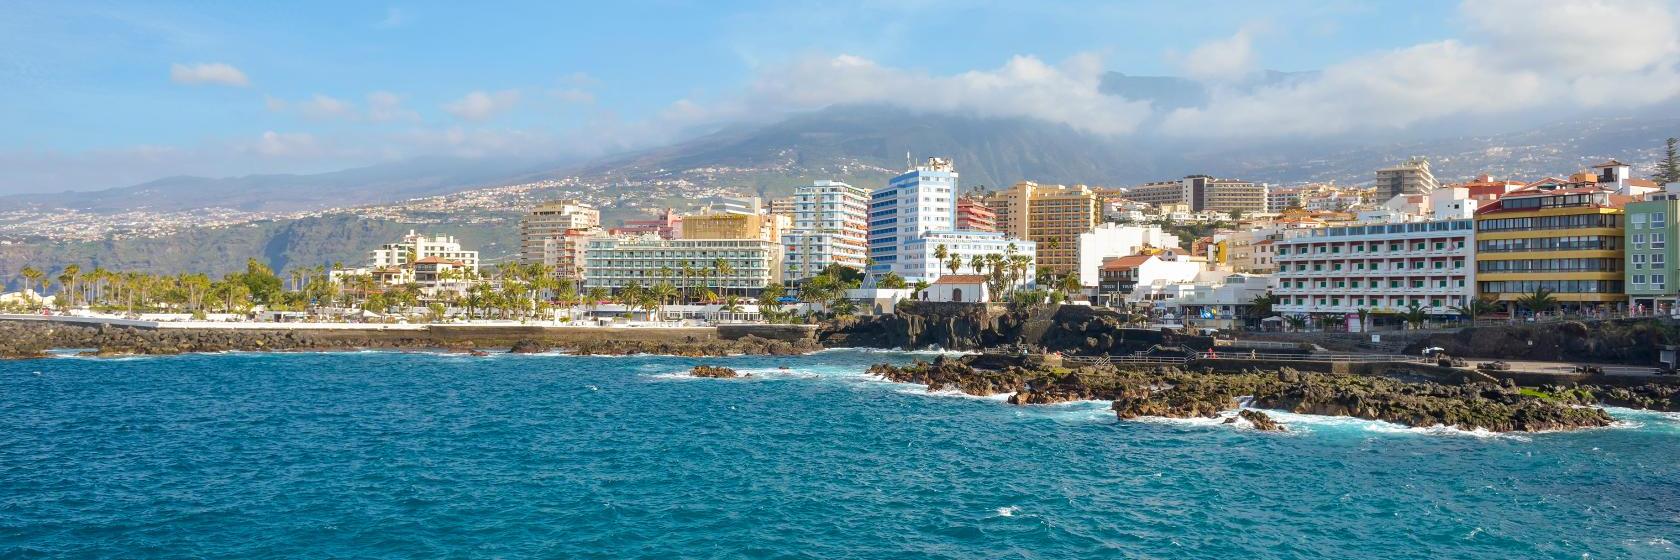 10 Best Puerto de la Cruz Hotels, Spain (From $36)